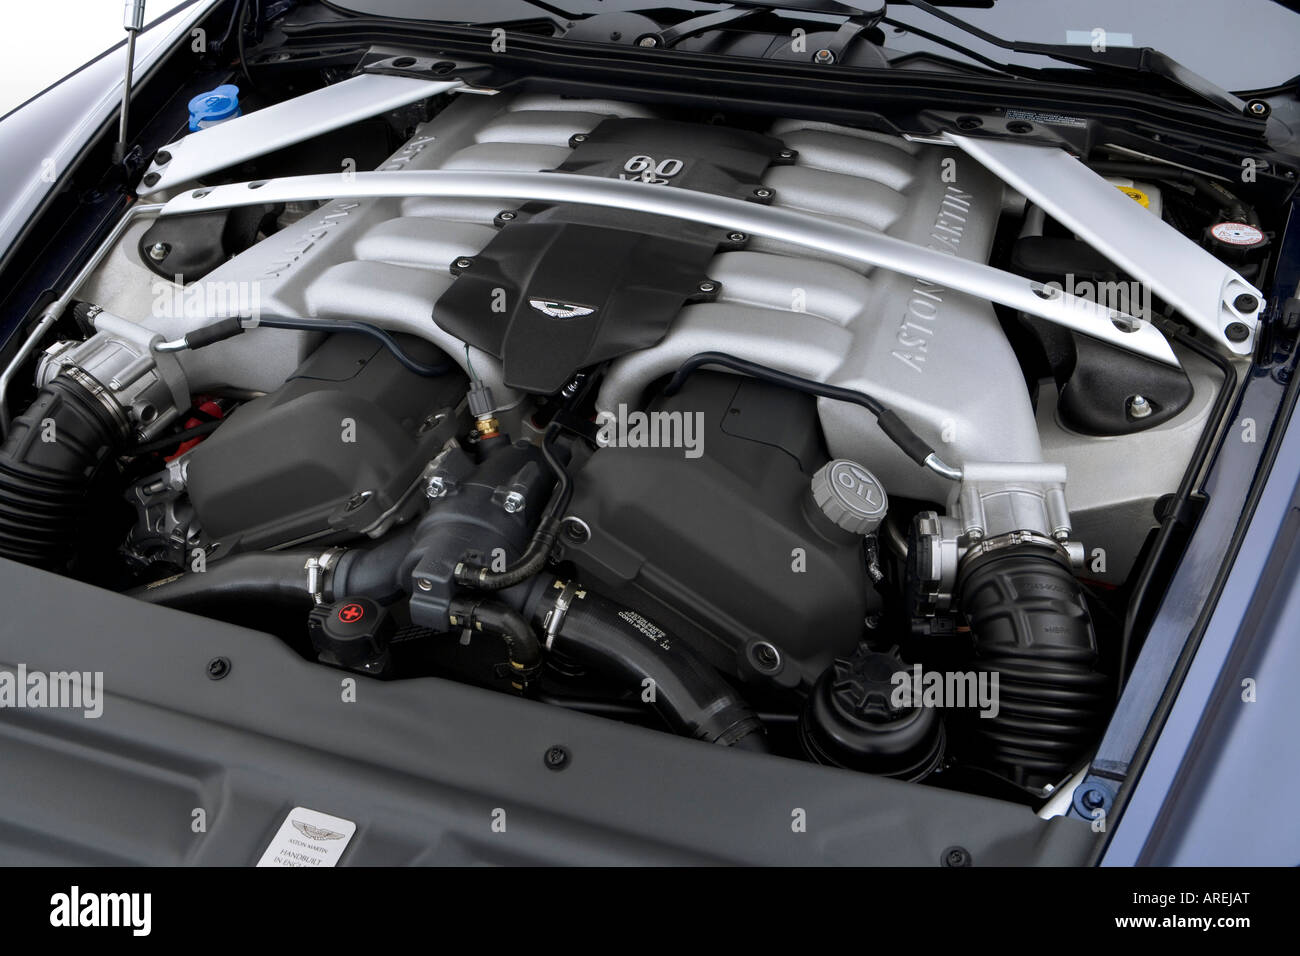 Aston Martin DB9 Schalldämmung Isolierung Motorraum Motorhaube